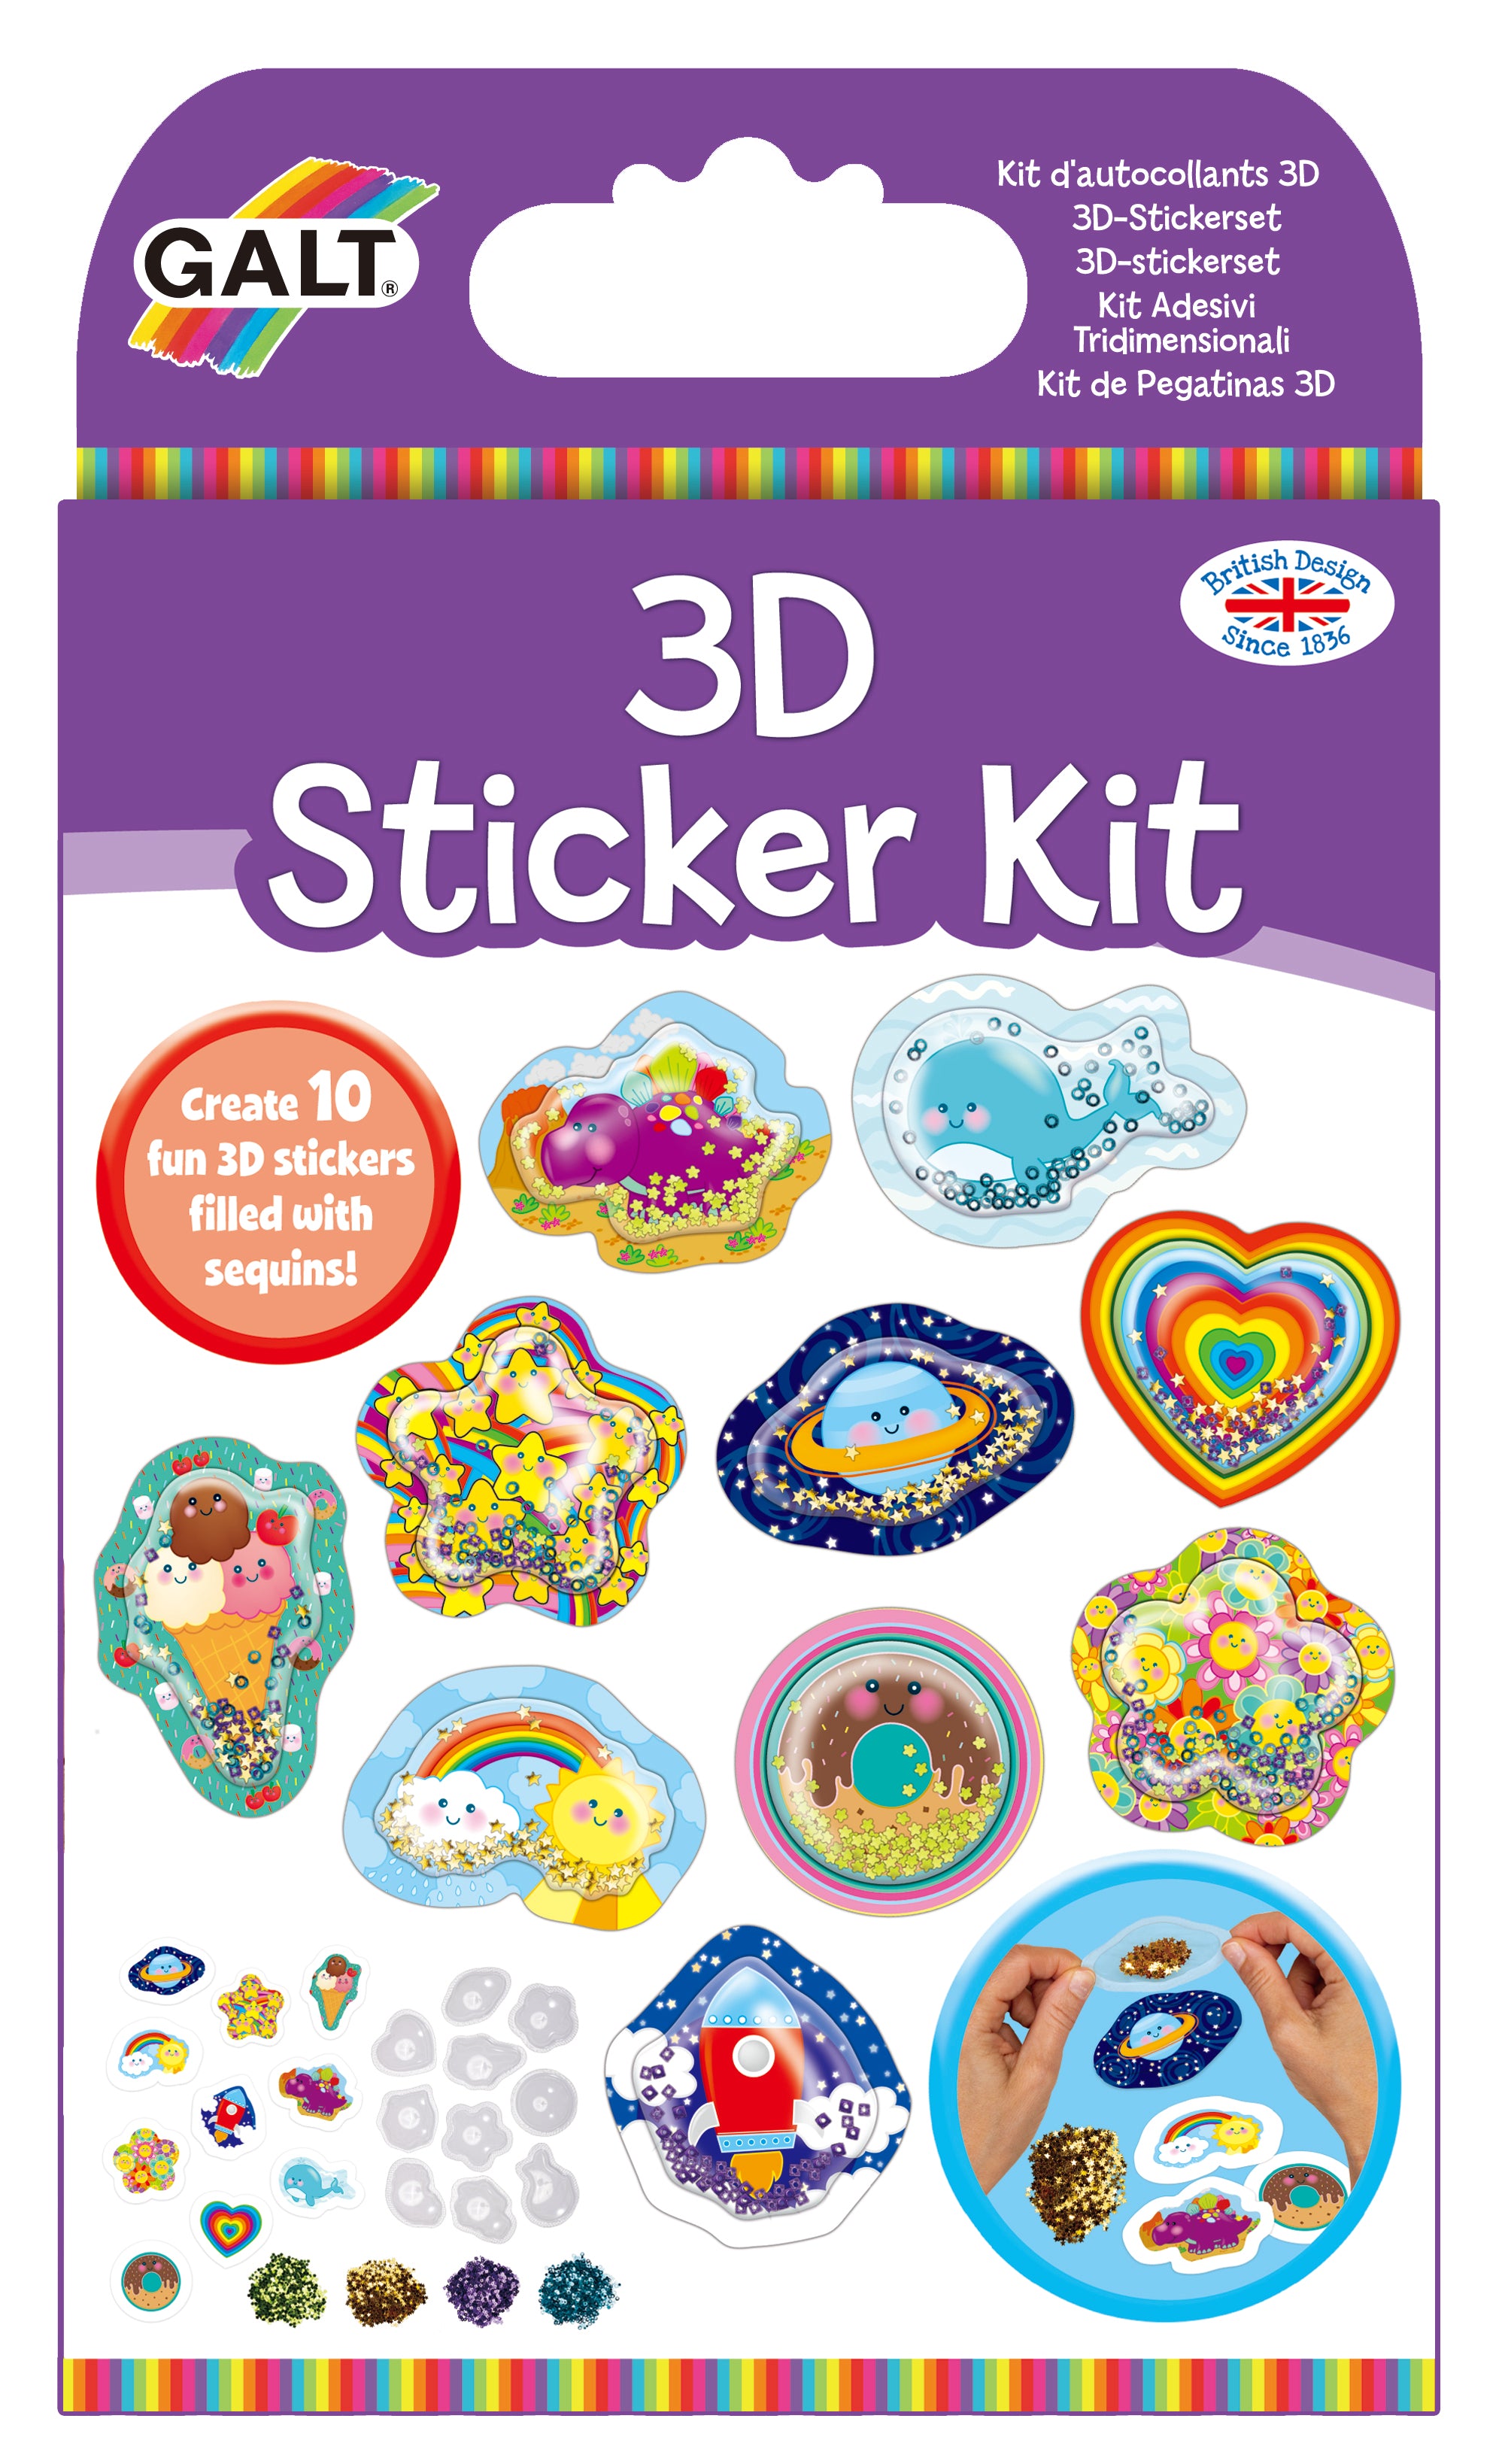 Galt - 3D Sticker Kit